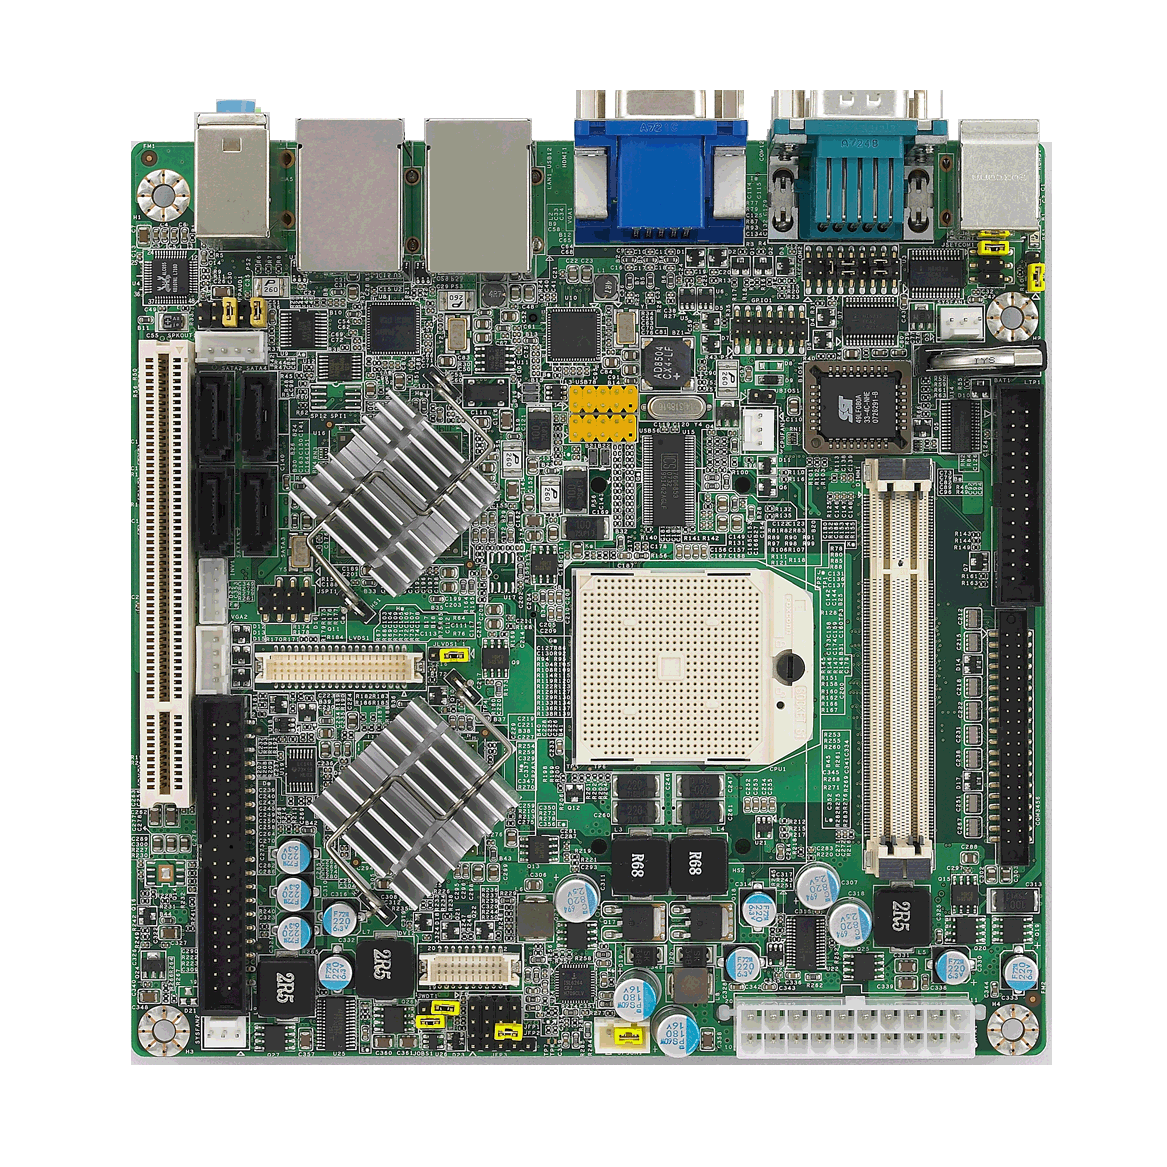 AMD Socket S1 Mini-ITX 
HTS 800 w/VGA/HDMI/LVDS/
6COM/2GbE,RoHS